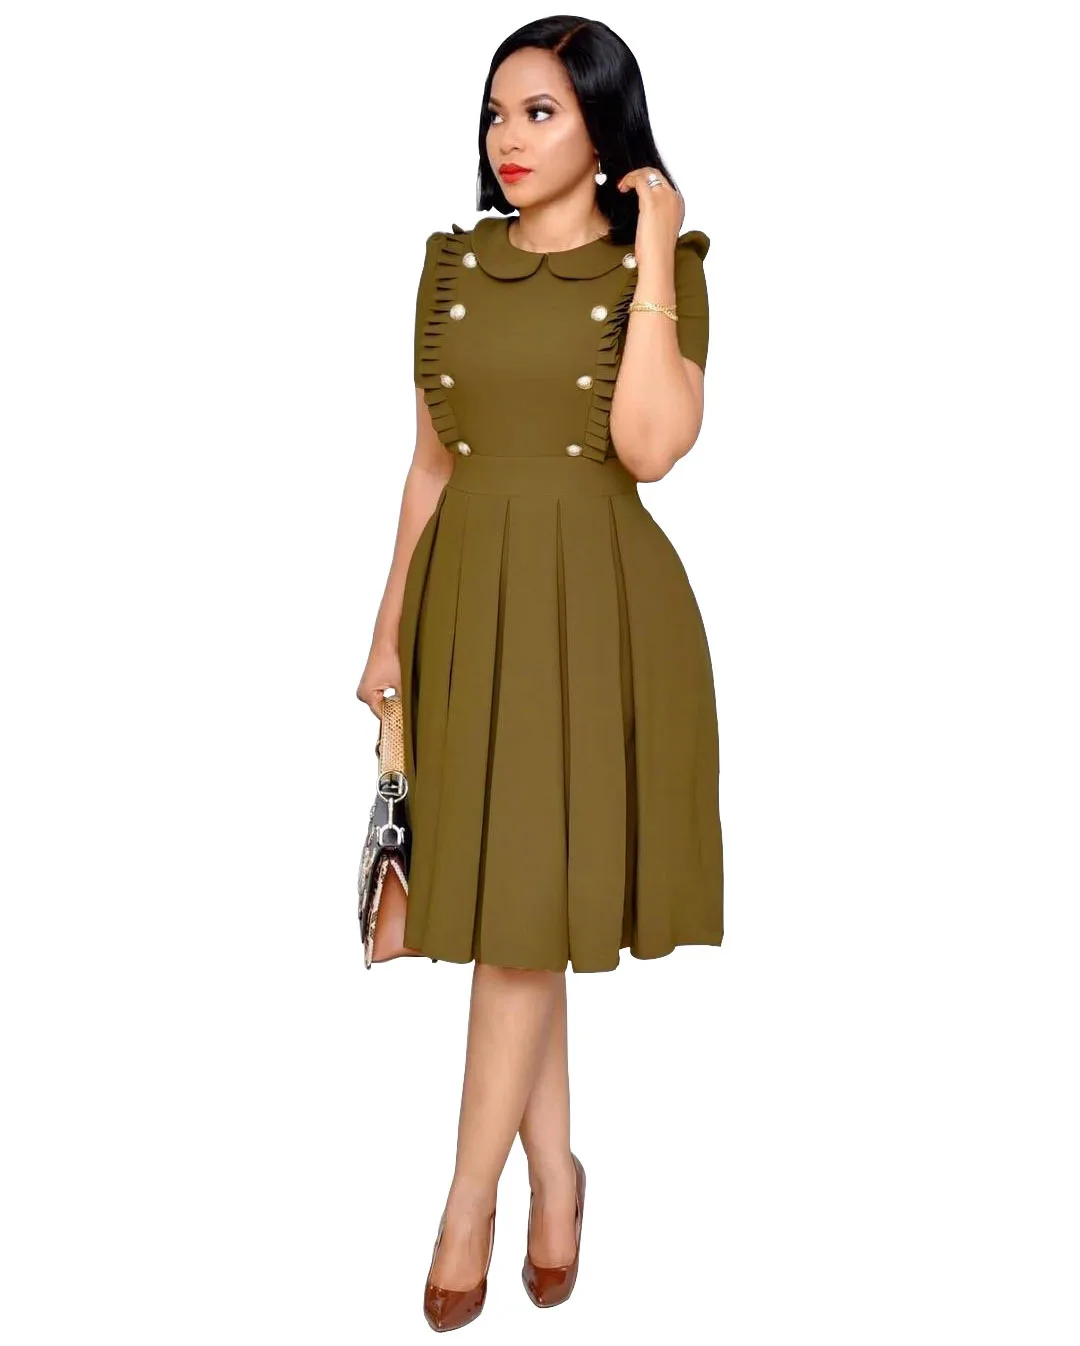 WY6540 Европейское и американское модное плиссированное платье с короткими рукавами и воротником в виде листа лотоса плиссированное платье 4 цвета S-2xl Размер